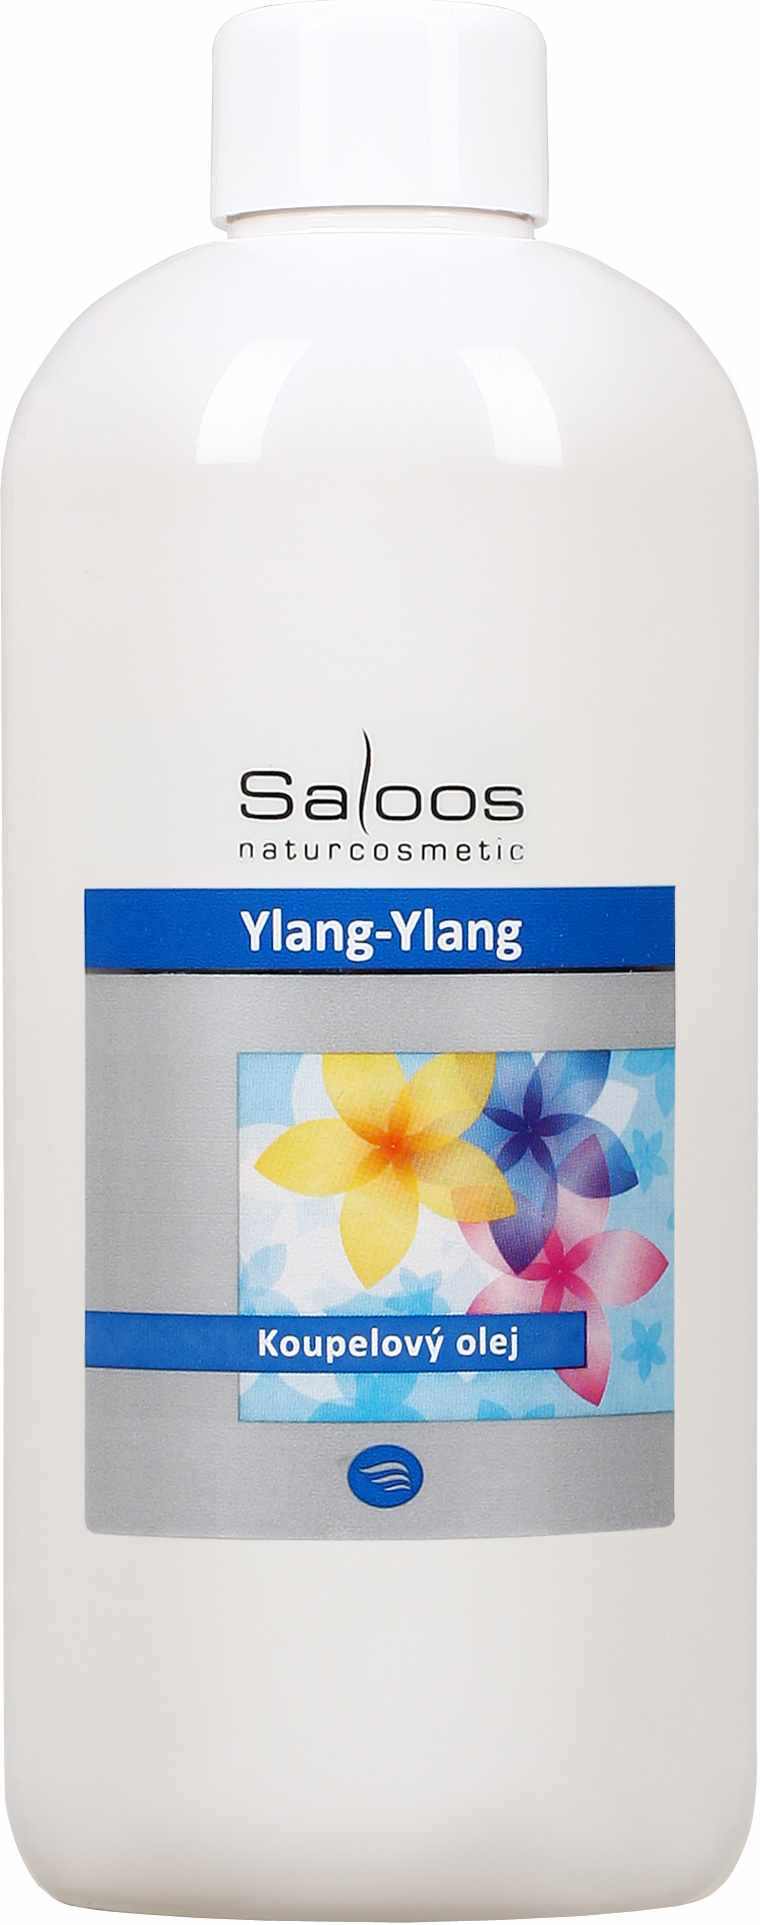 Saloos Ylang-ylang - koupelový olej Balení: 250 ml